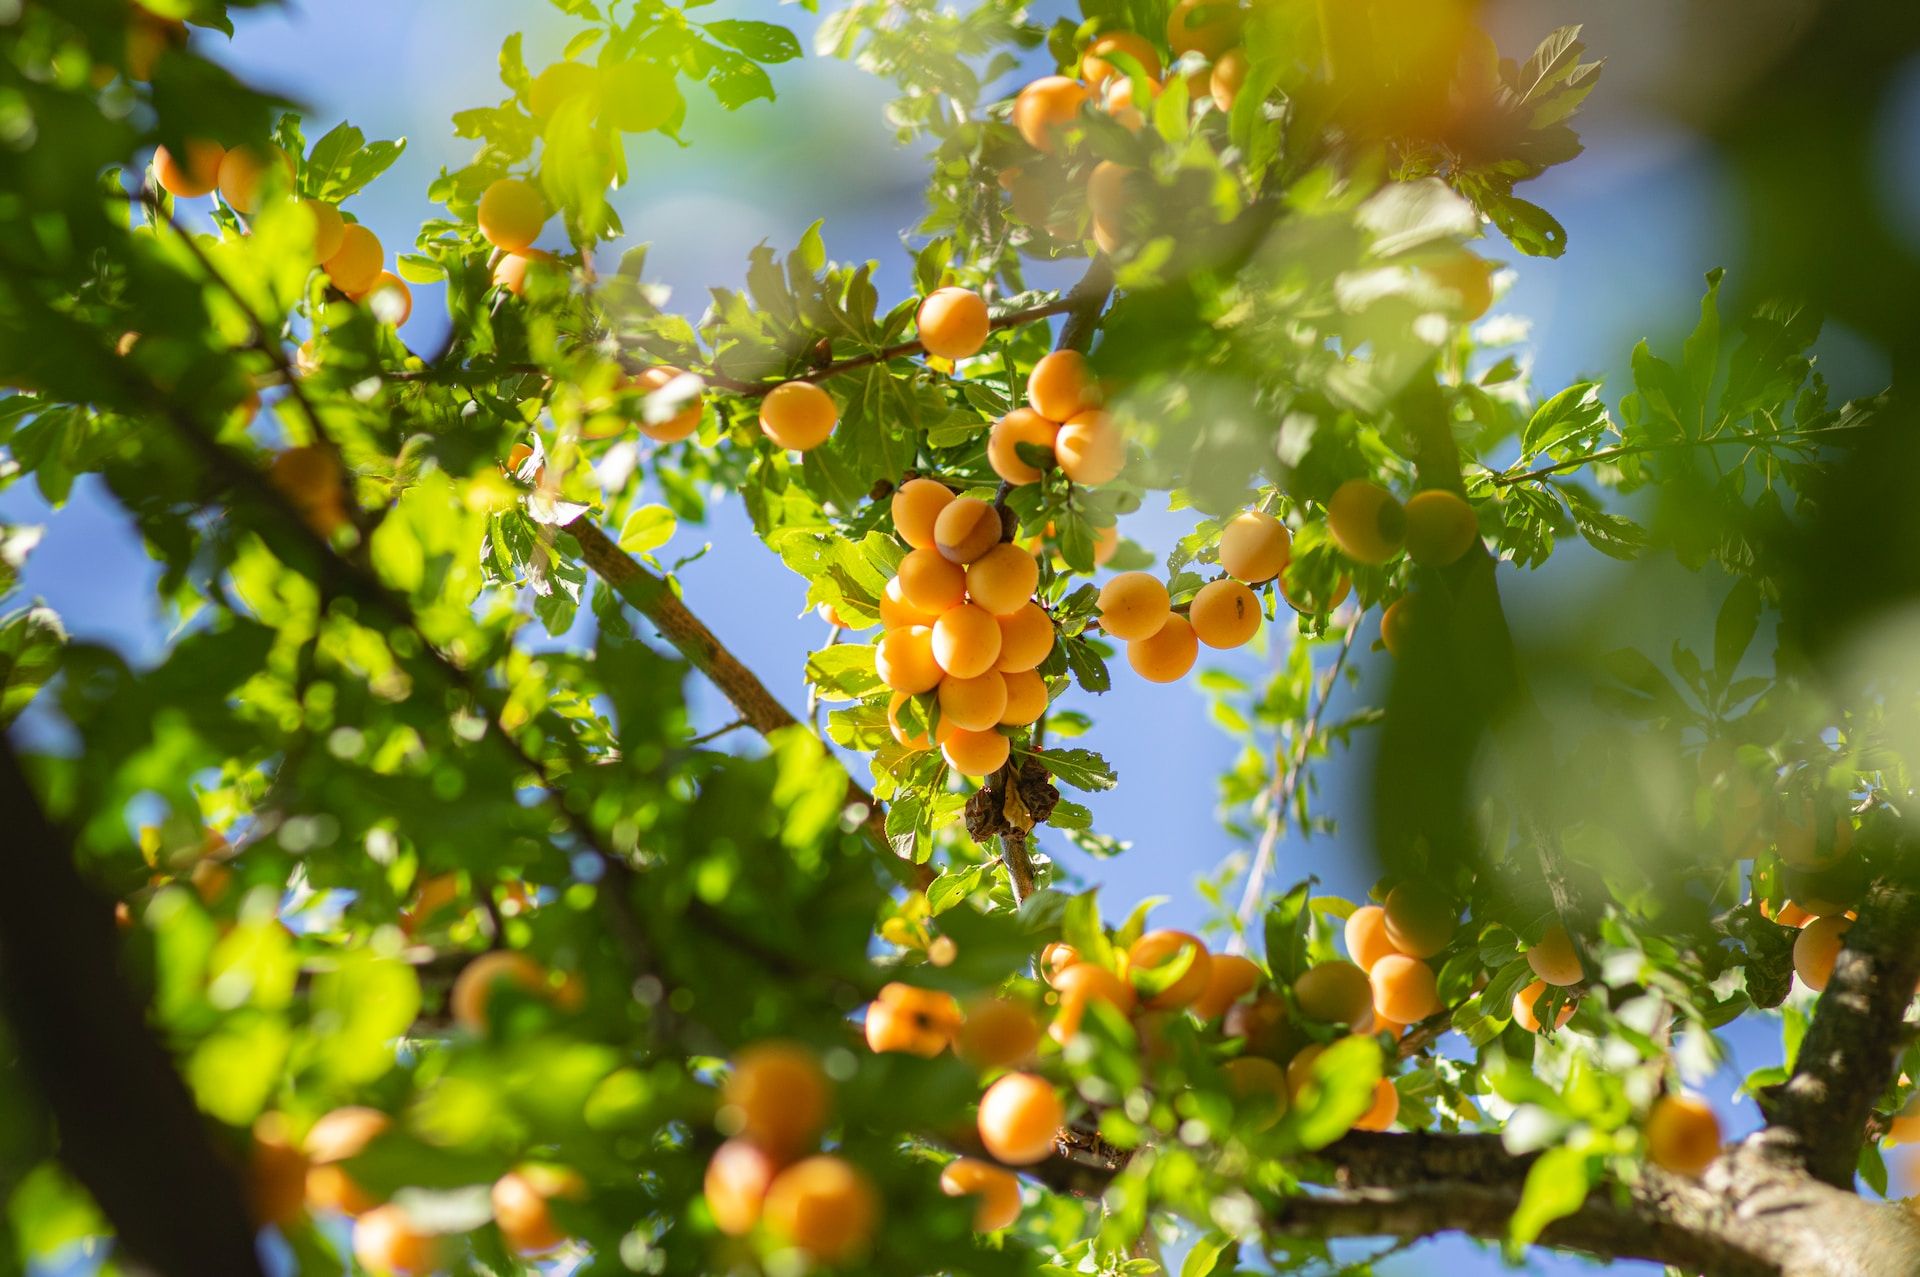 Des branches d'arbres couvertes d'abricots mûrs dans le soleil - Photo de Elena Mozhvilo sur https://unsplash.com/fr/photos/fruits-ronds-verts-et-jaunes-sur-larbre-pendant-la-journee-pI8rAihJ4Nc